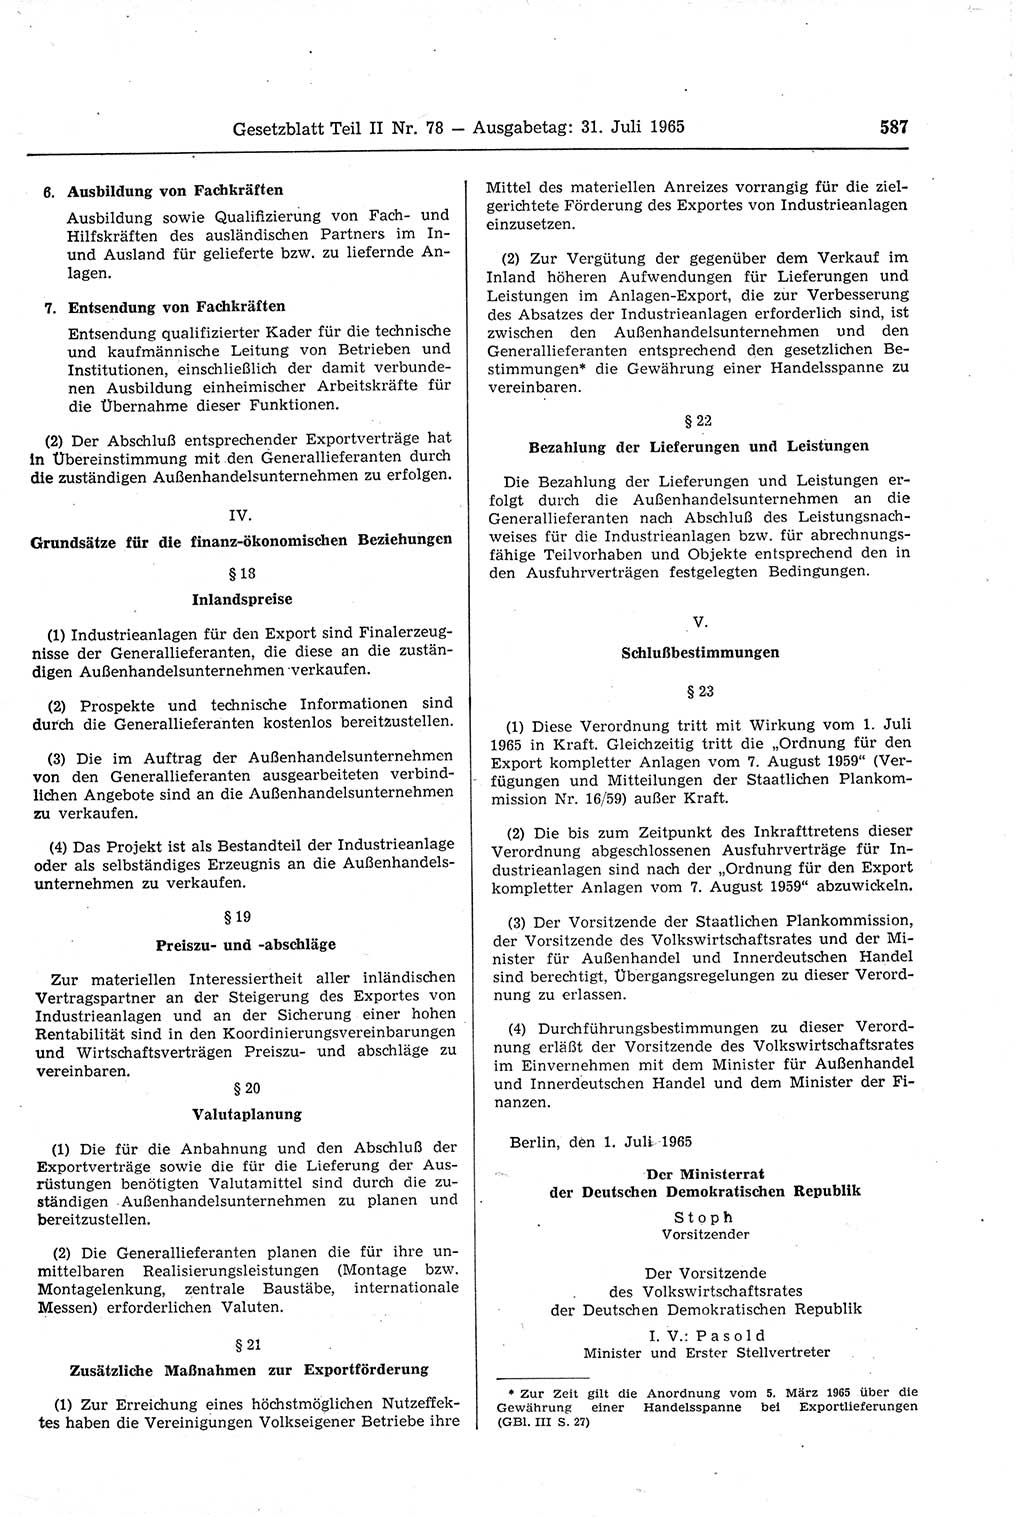 Gesetzblatt (GBl.) der Deutschen Demokratischen Republik (DDR) Teil ⅠⅠ 1965, Seite 587 (GBl. DDR ⅠⅠ 1965, S. 587)